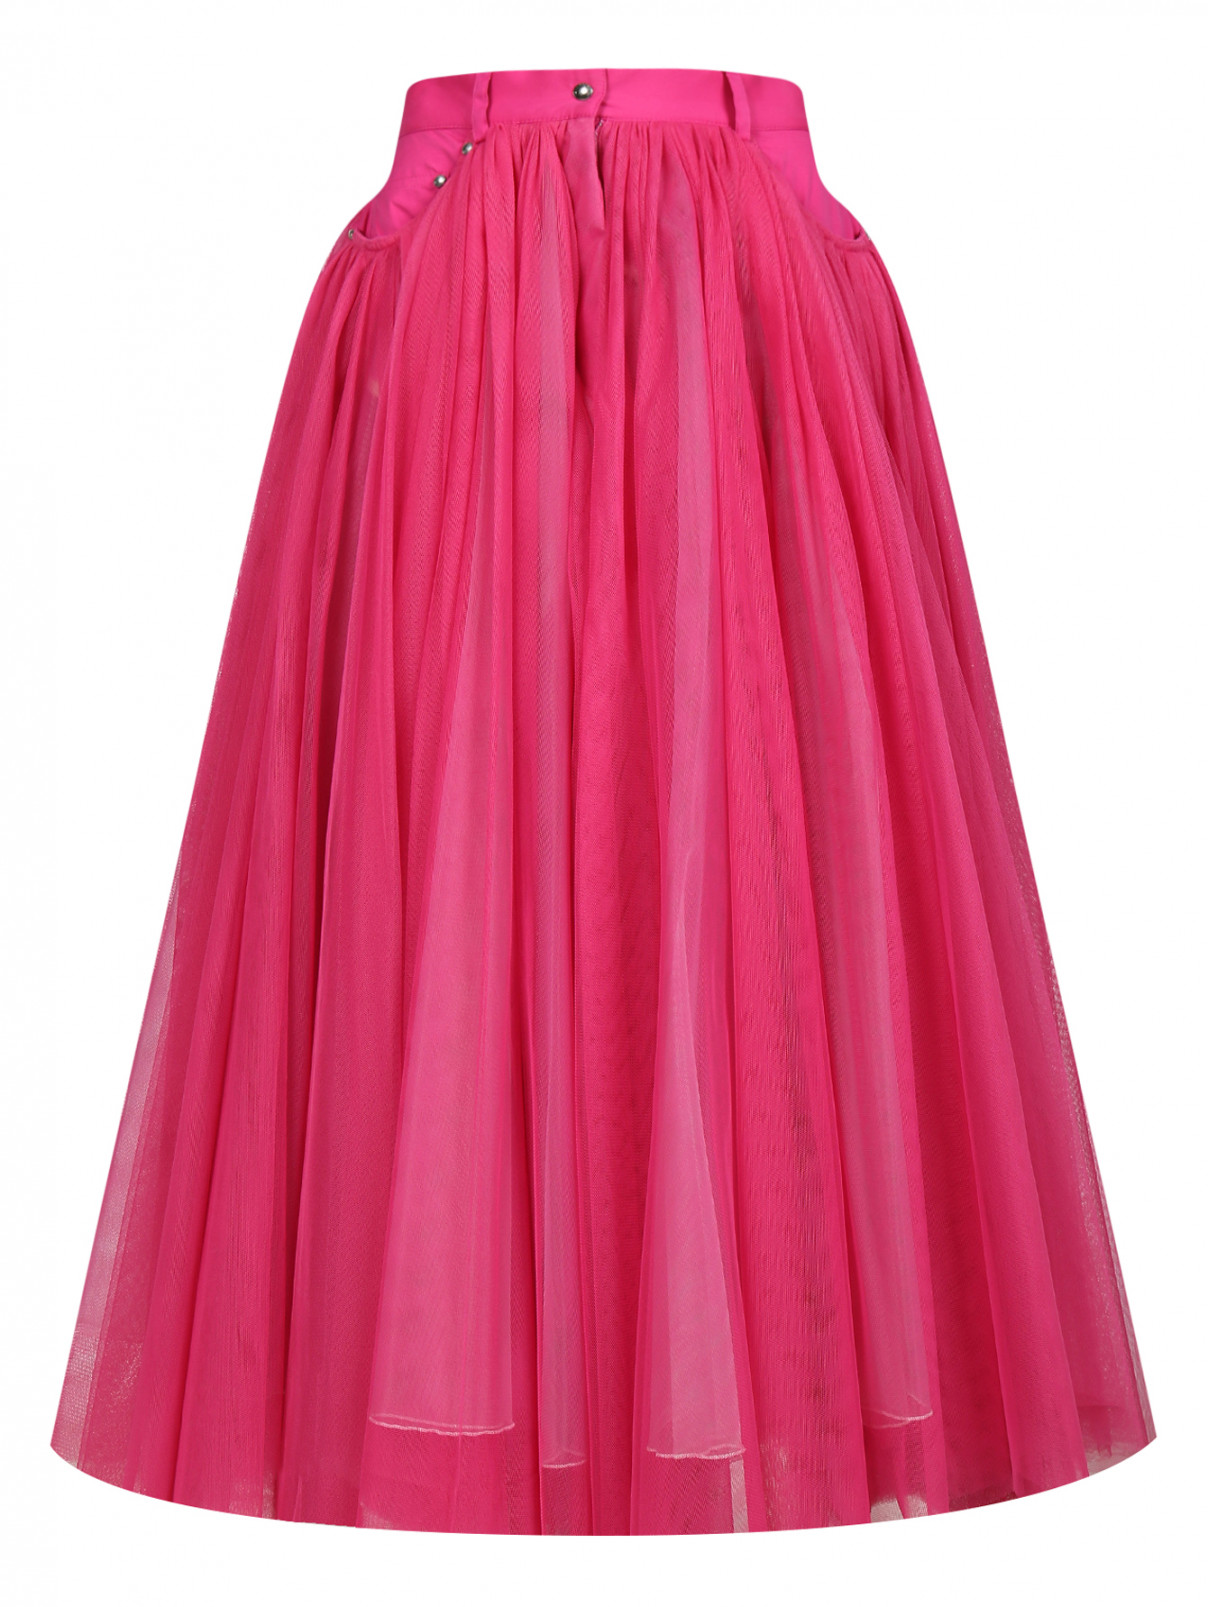 Многослойная юбка Jean Paul Gaultier  –  Общий вид  – Цвет:  Розовый